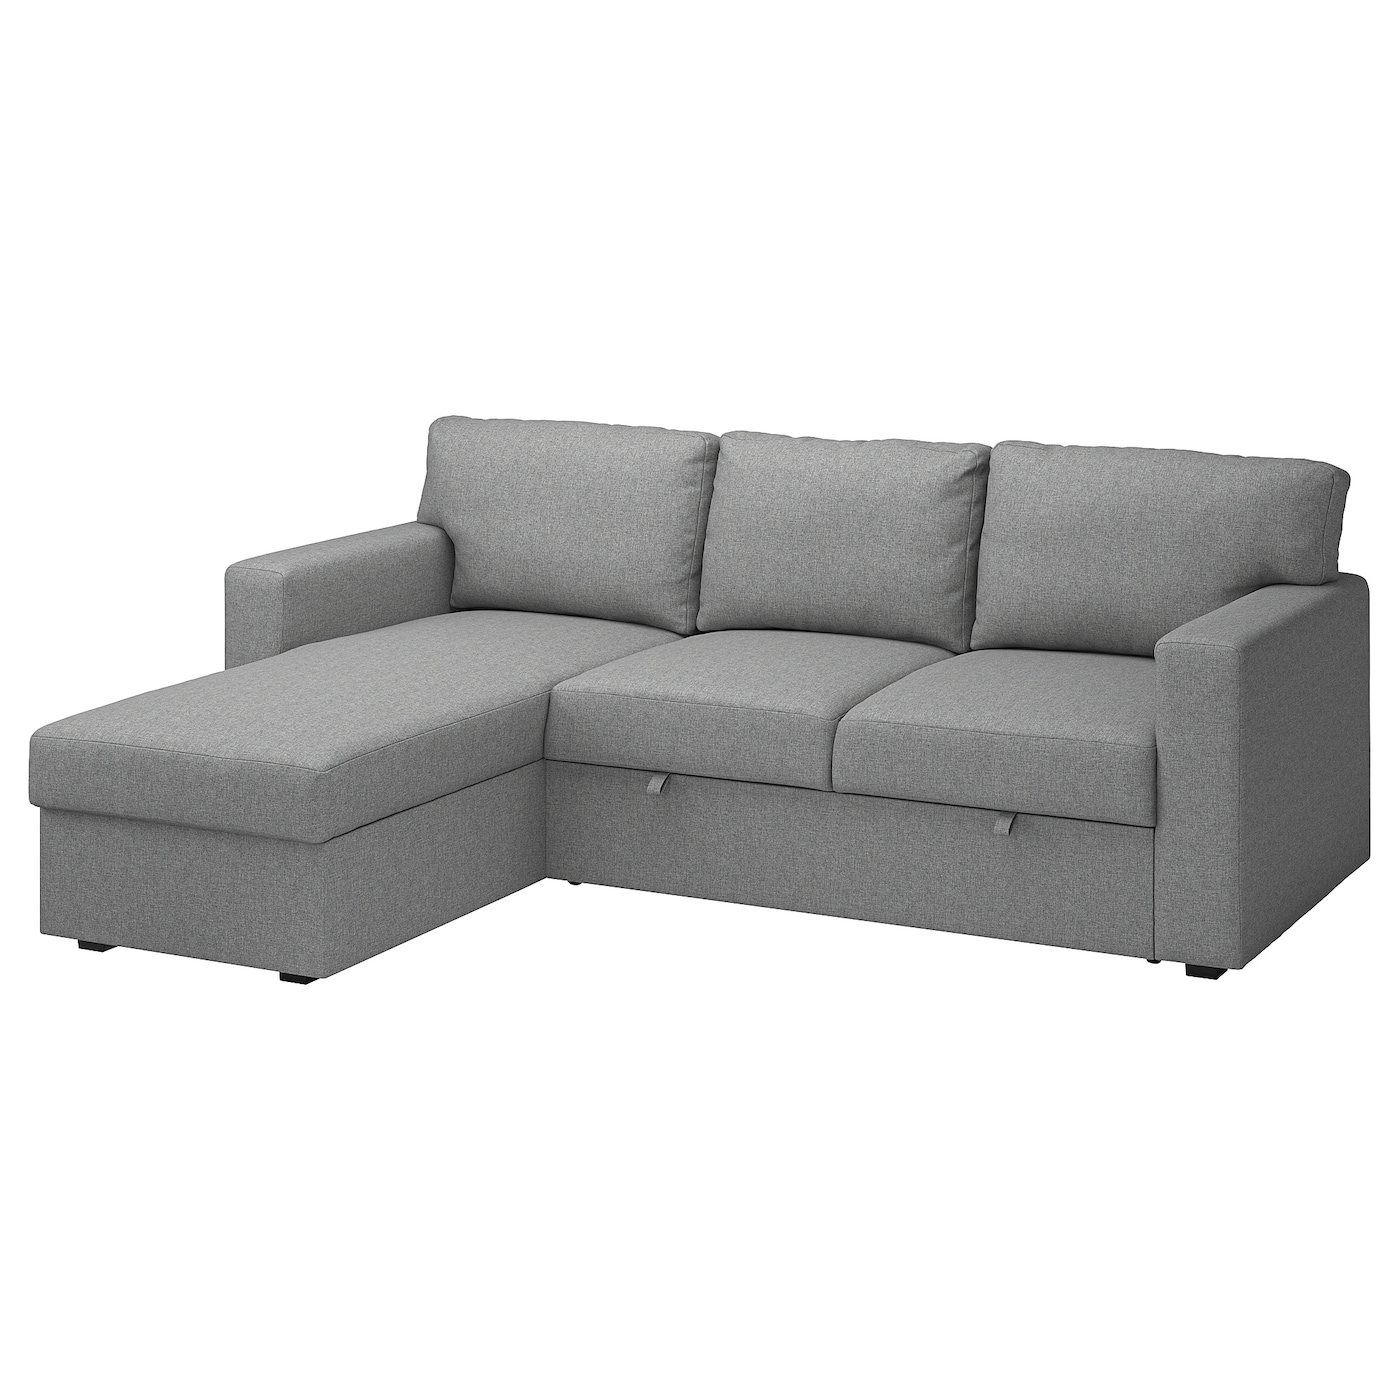 диван кровать портленд бежевый микровельвет БОРСЛОВ 3-местный диван-кровать + диван, Тибблби бежевый/серый BÅRSLÖV IKEA